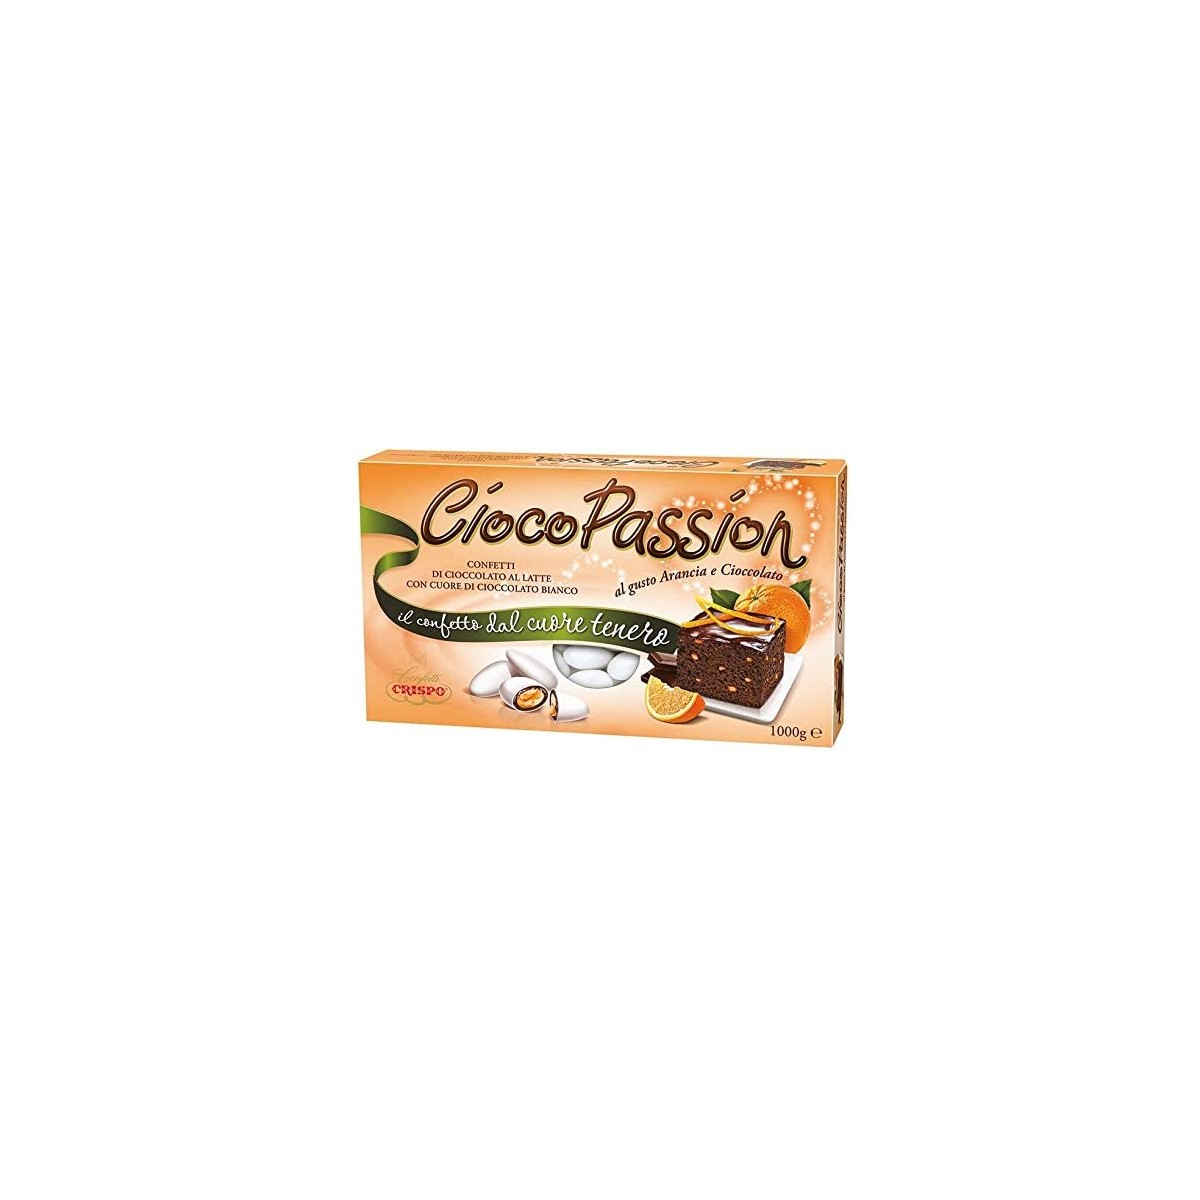 Confetti Crispo Arancia e cioccolato, da 1 kg - Ciocopassion